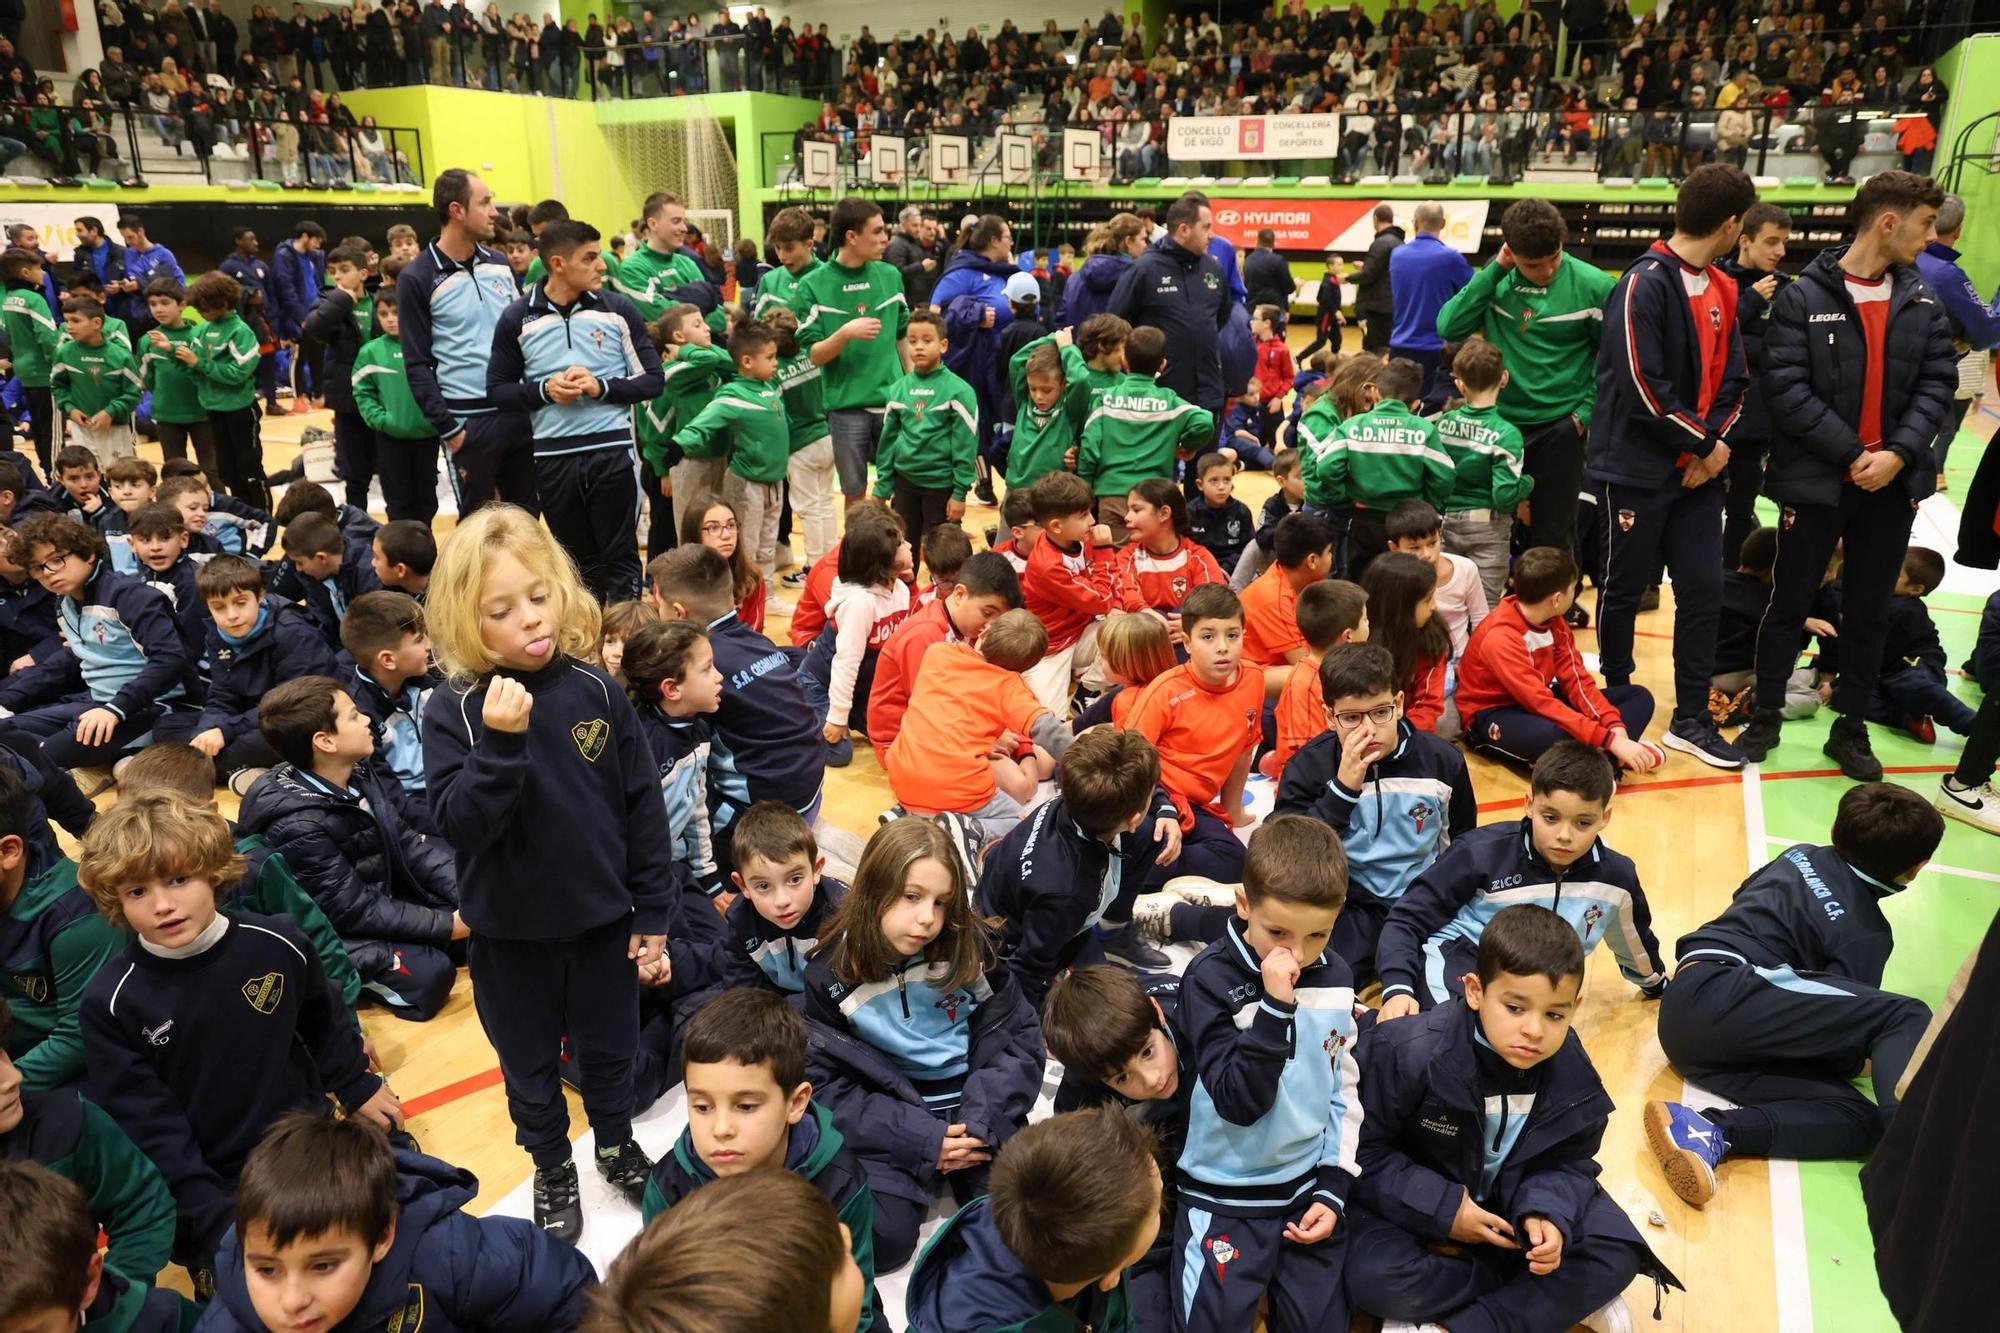 Las mejores imágenes del Torneo de Nadal en Vigo